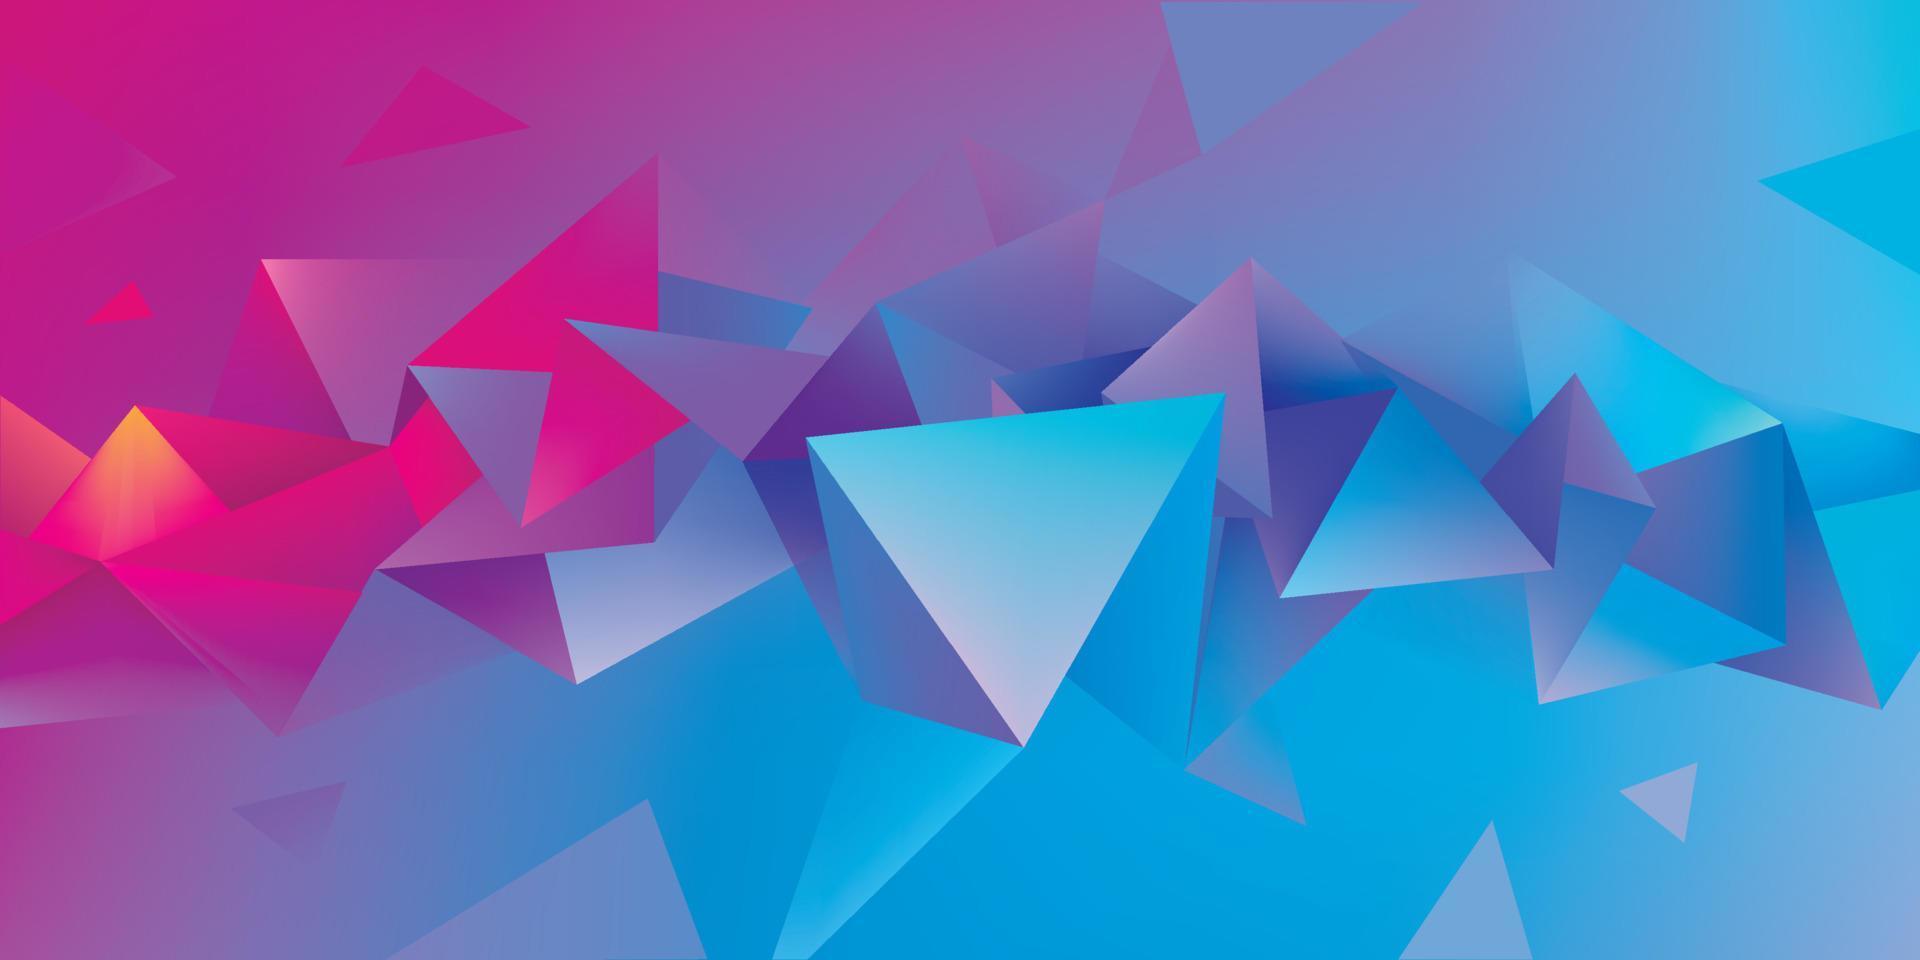 forme de facette 3d géométrique abstraite vectorielle isolée, cristal, style origami. utiliser pour les bannières, le web, la brochure, la publicité, l'affiche, etc. arrière-plan moderne low poly. vecteur